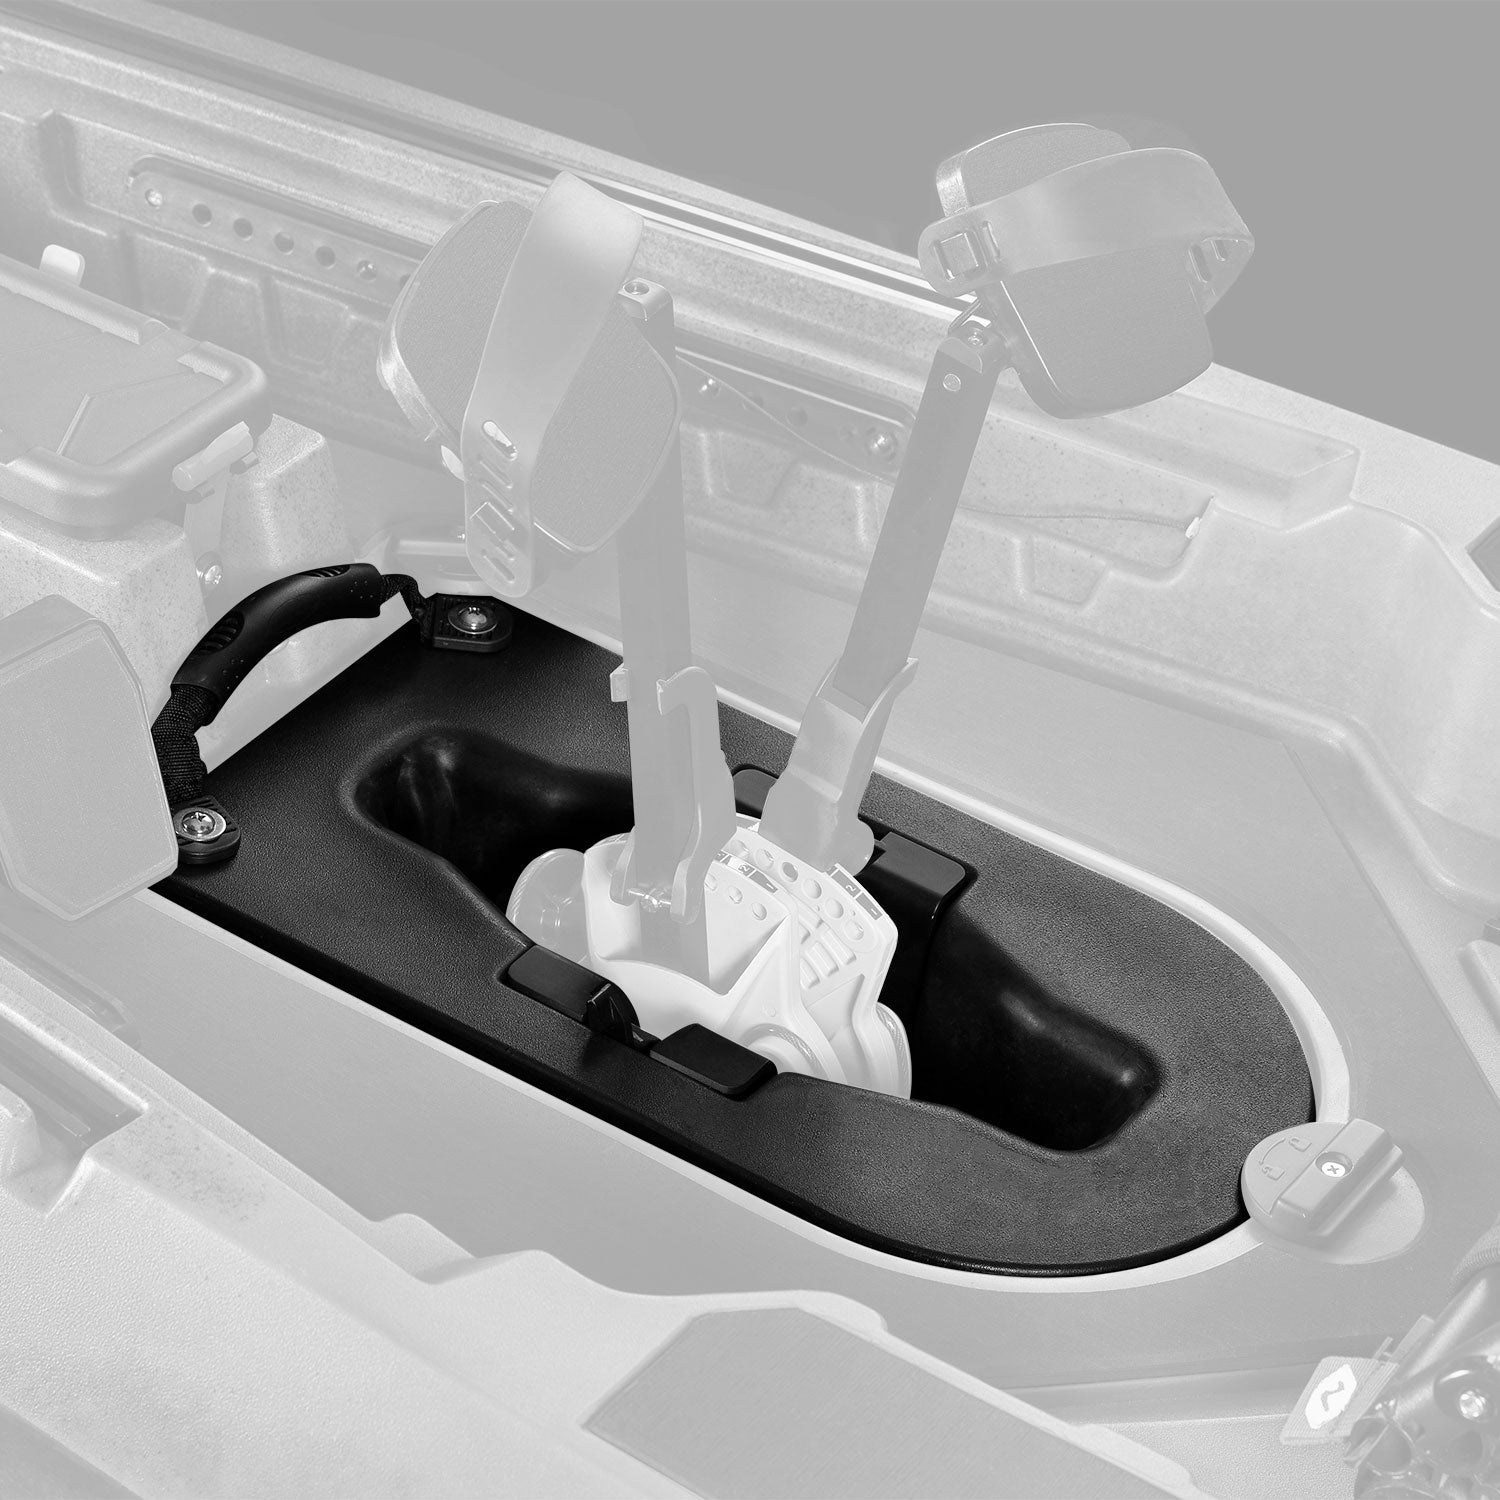 Ember Carbon Fiber Paddle (240-260cm adjustable)